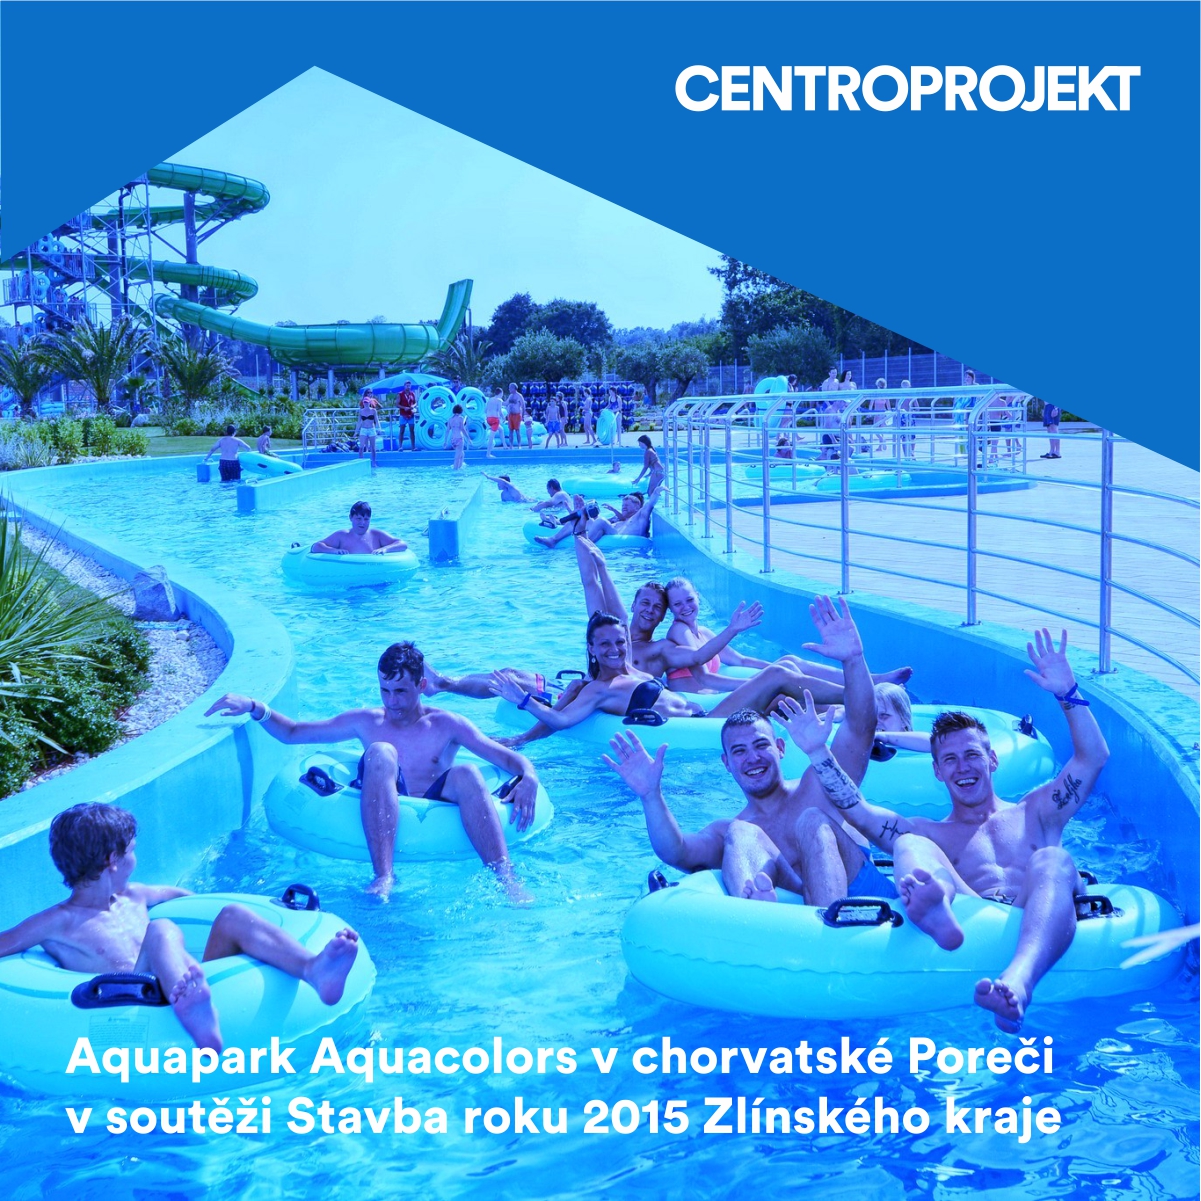 Aquapark Aquacolors v chorvatské Poreči v soutěži Stavba roku Zlínského kraje